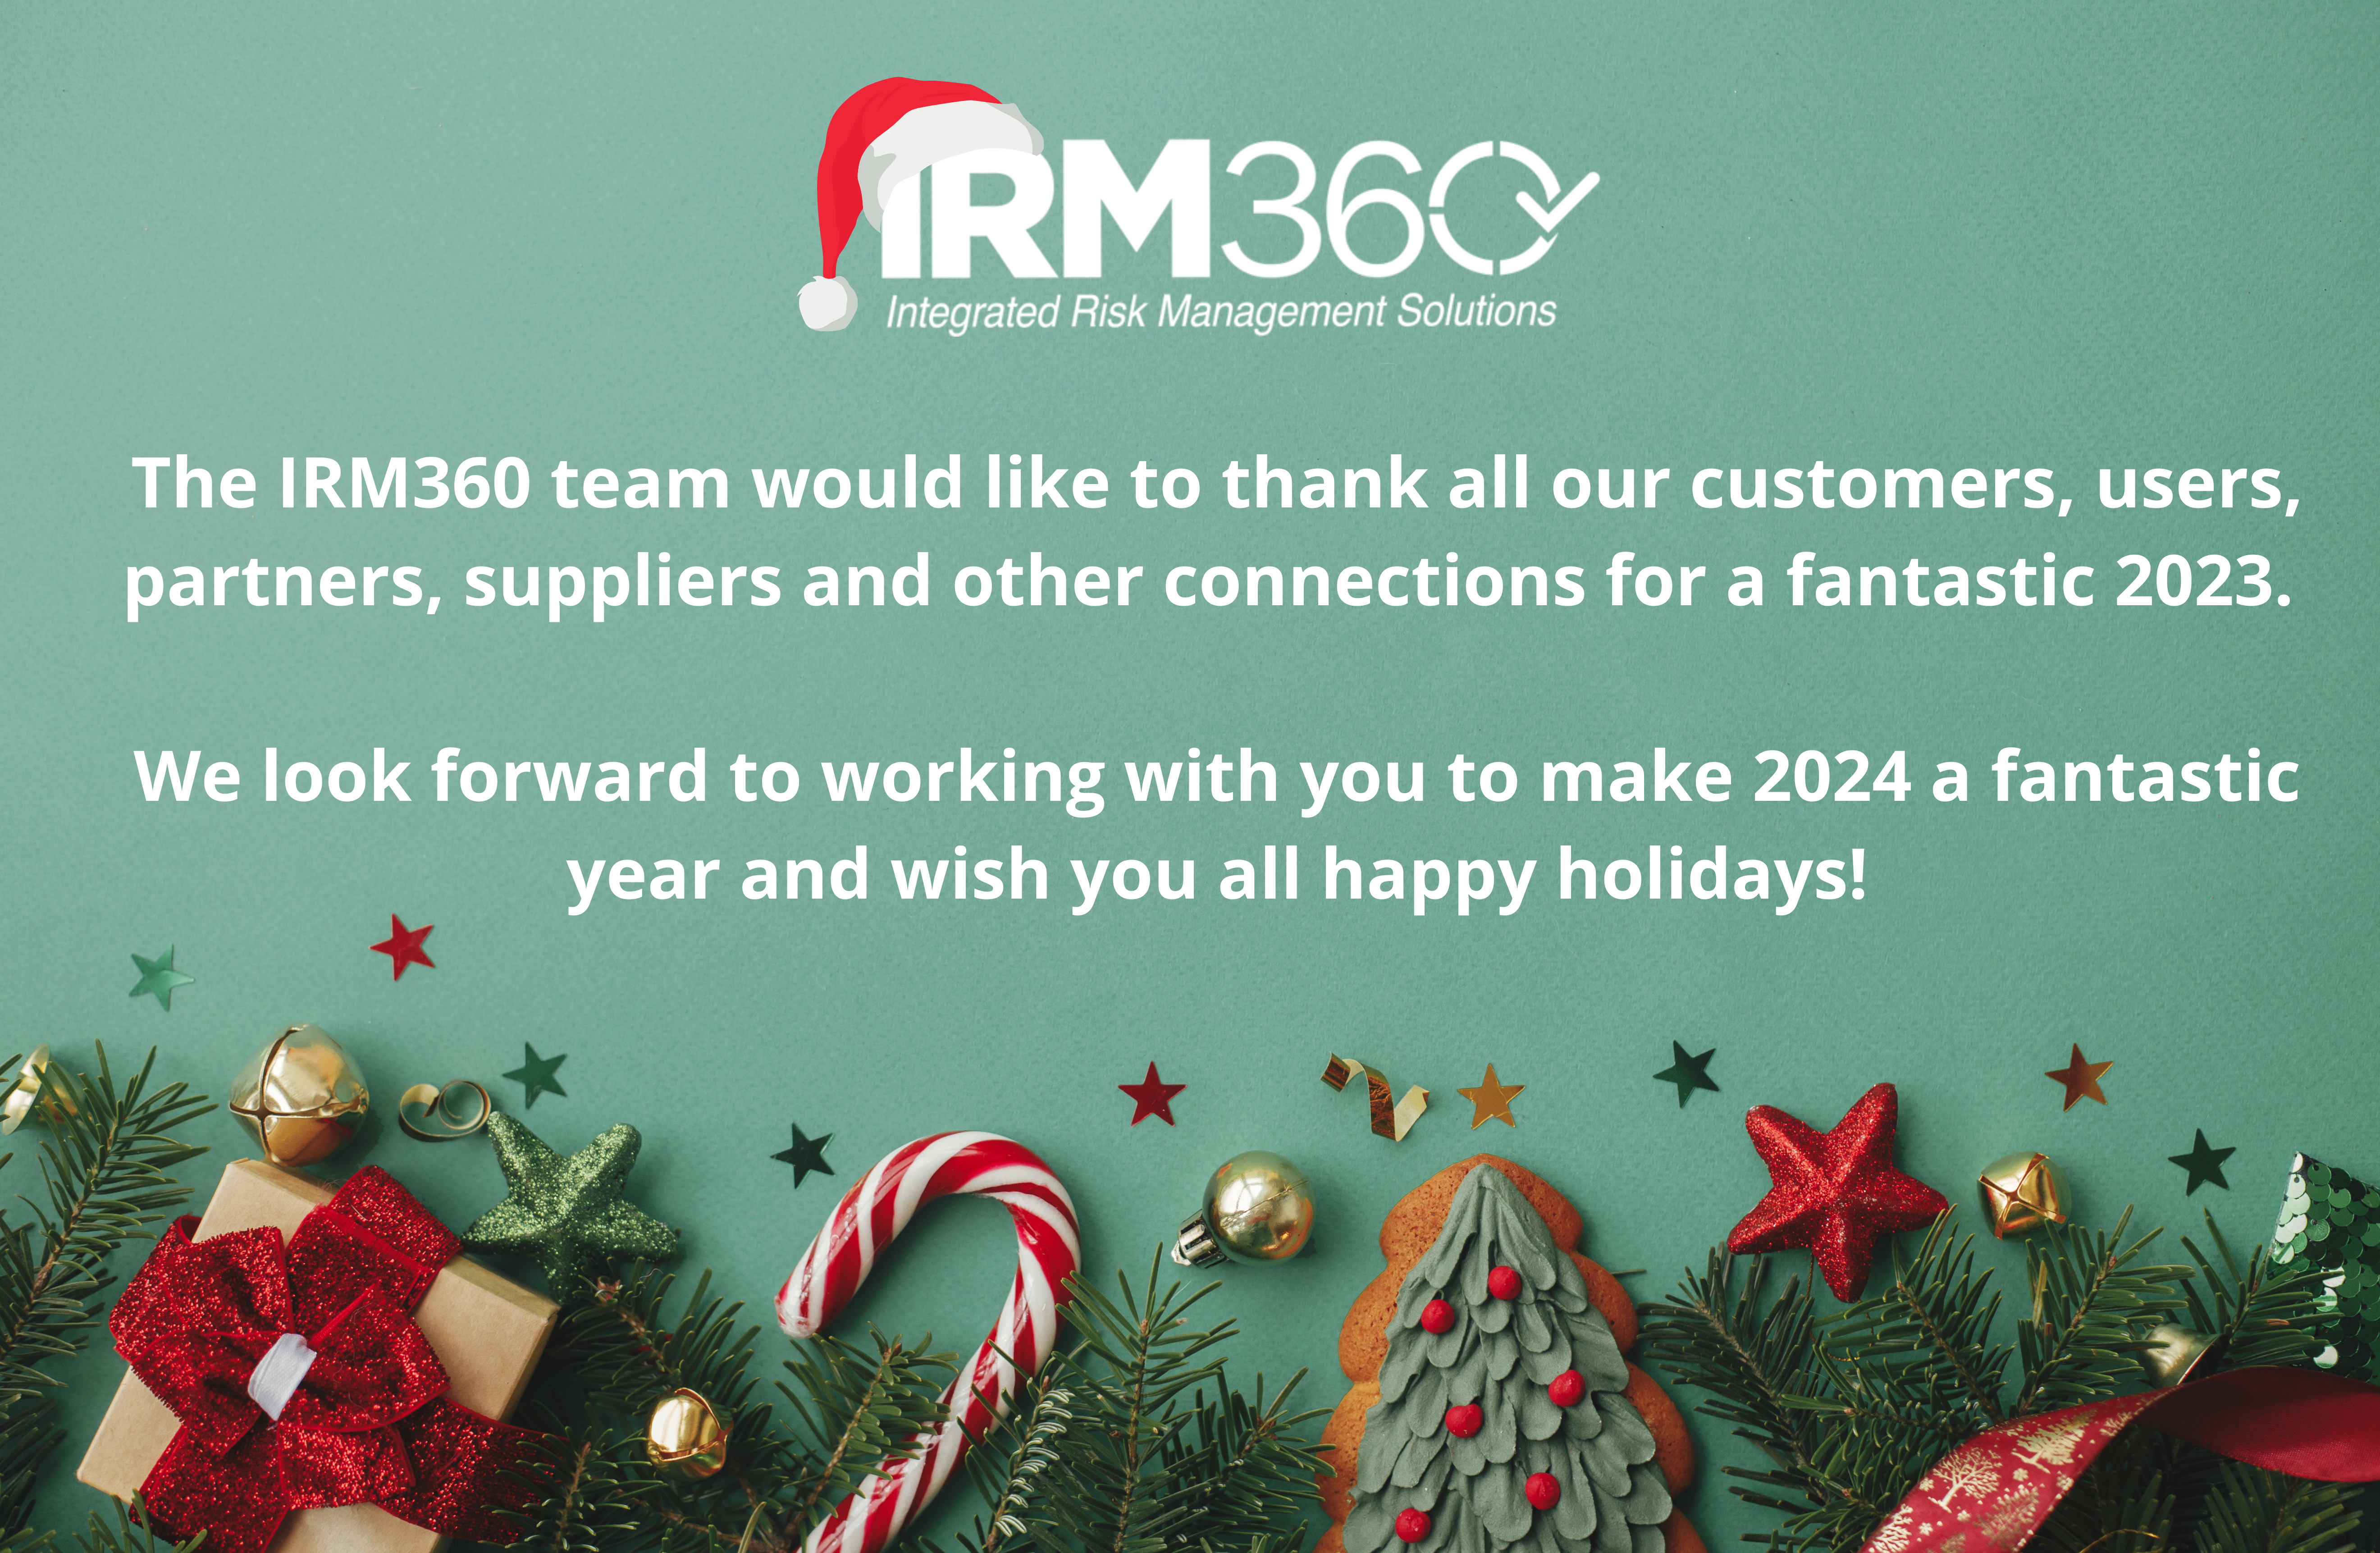 Το IRM360 εύχεται σε όλους Καλά Χριστούγεννα και Ευτυχισμένο Νέο Έτος!